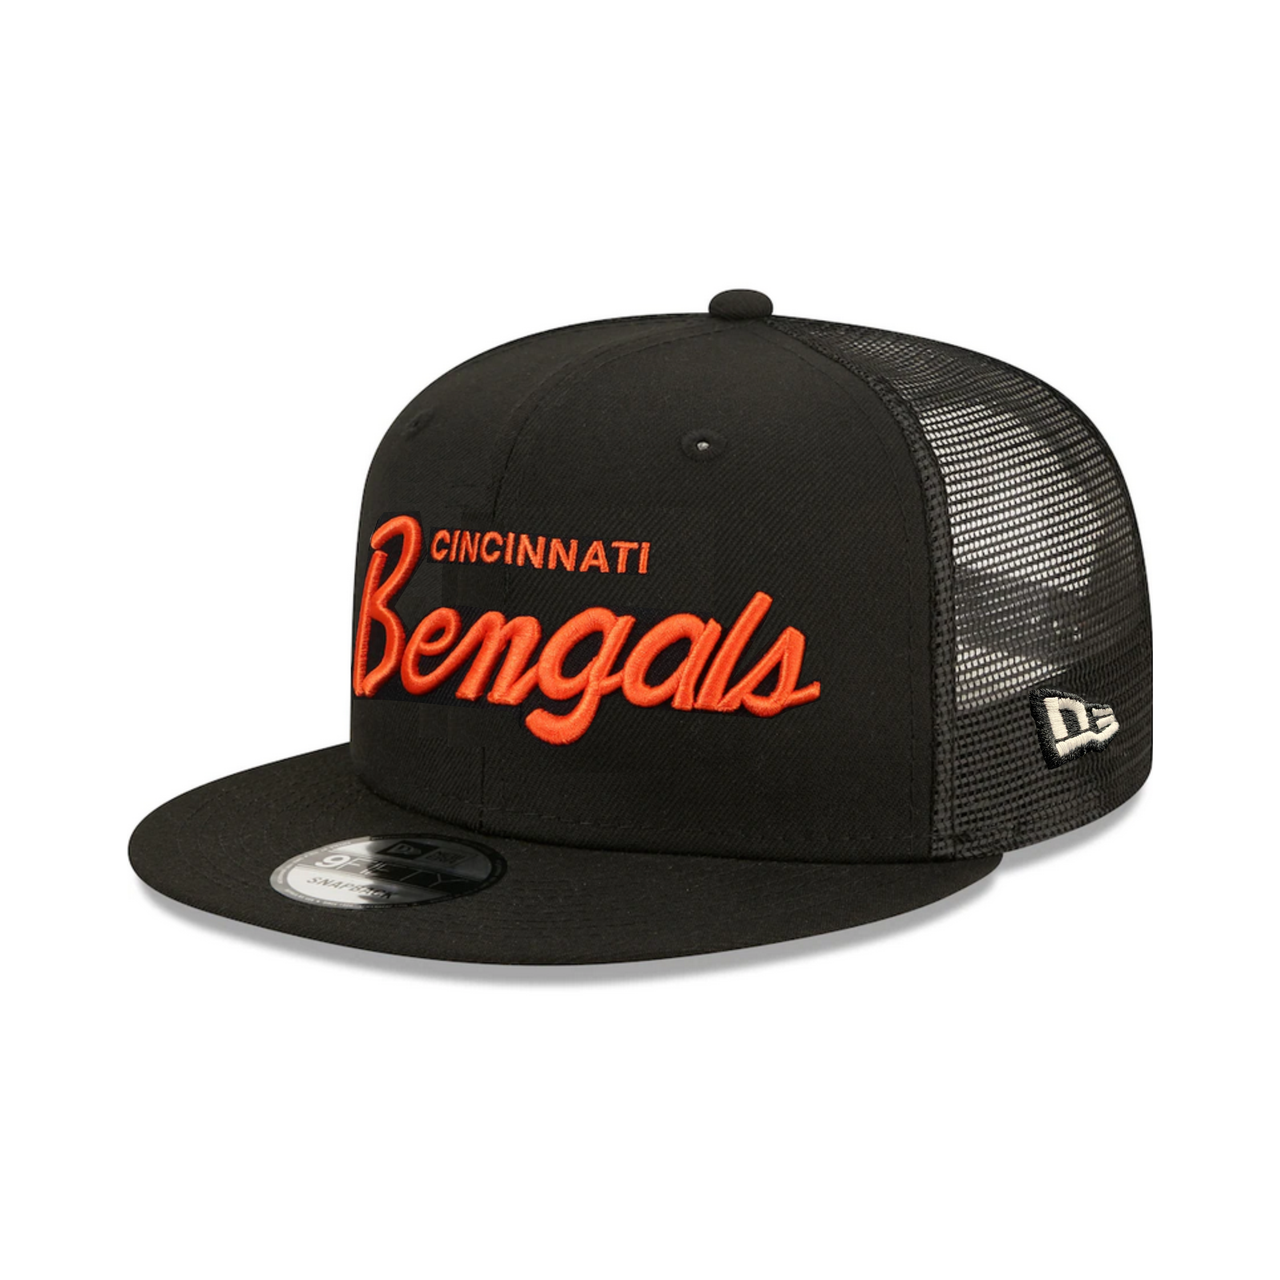 Cincinnati Bengals New Era Black Griswold 9FIFTY Trucker Snapback Hat